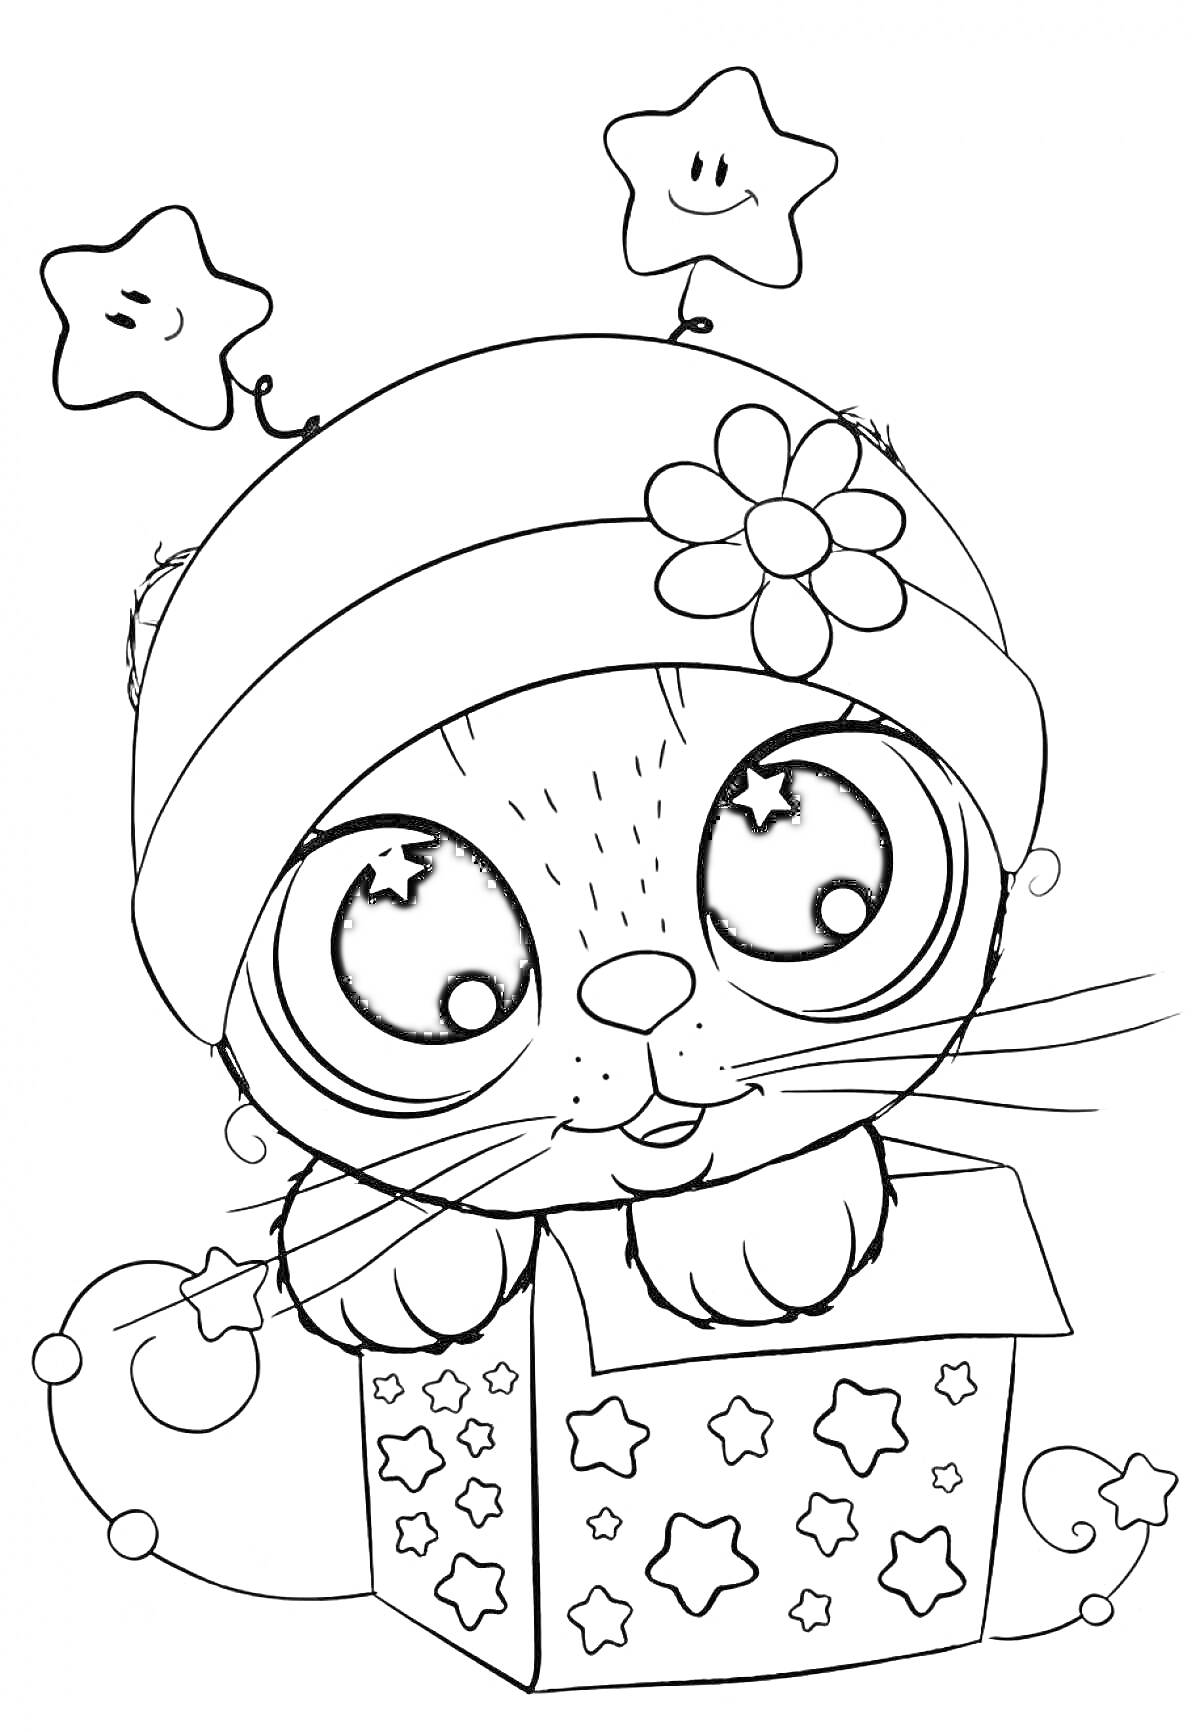 Раскраска Котик в шапке с цветком в ящике со звездами и антеннами-звездочками на голове